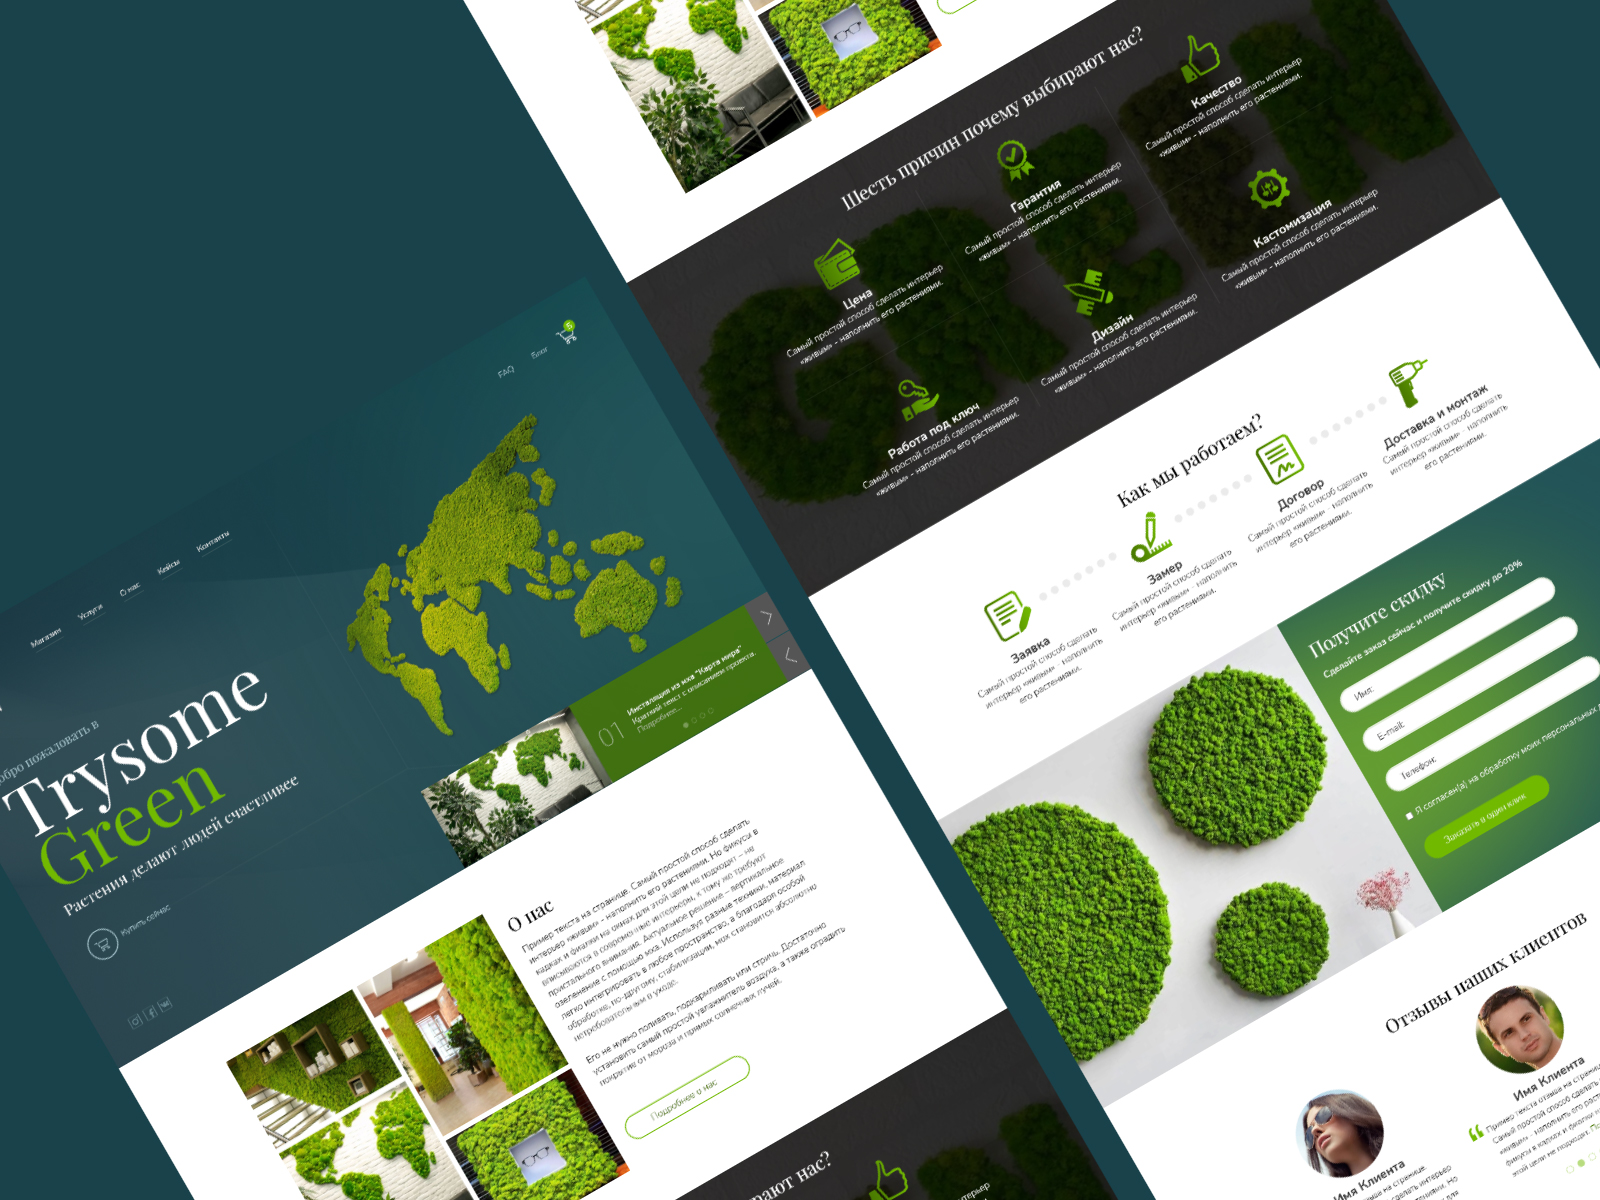 Дизайн сайта для компании, занимающейся предметами интерьера из мха и живых растений